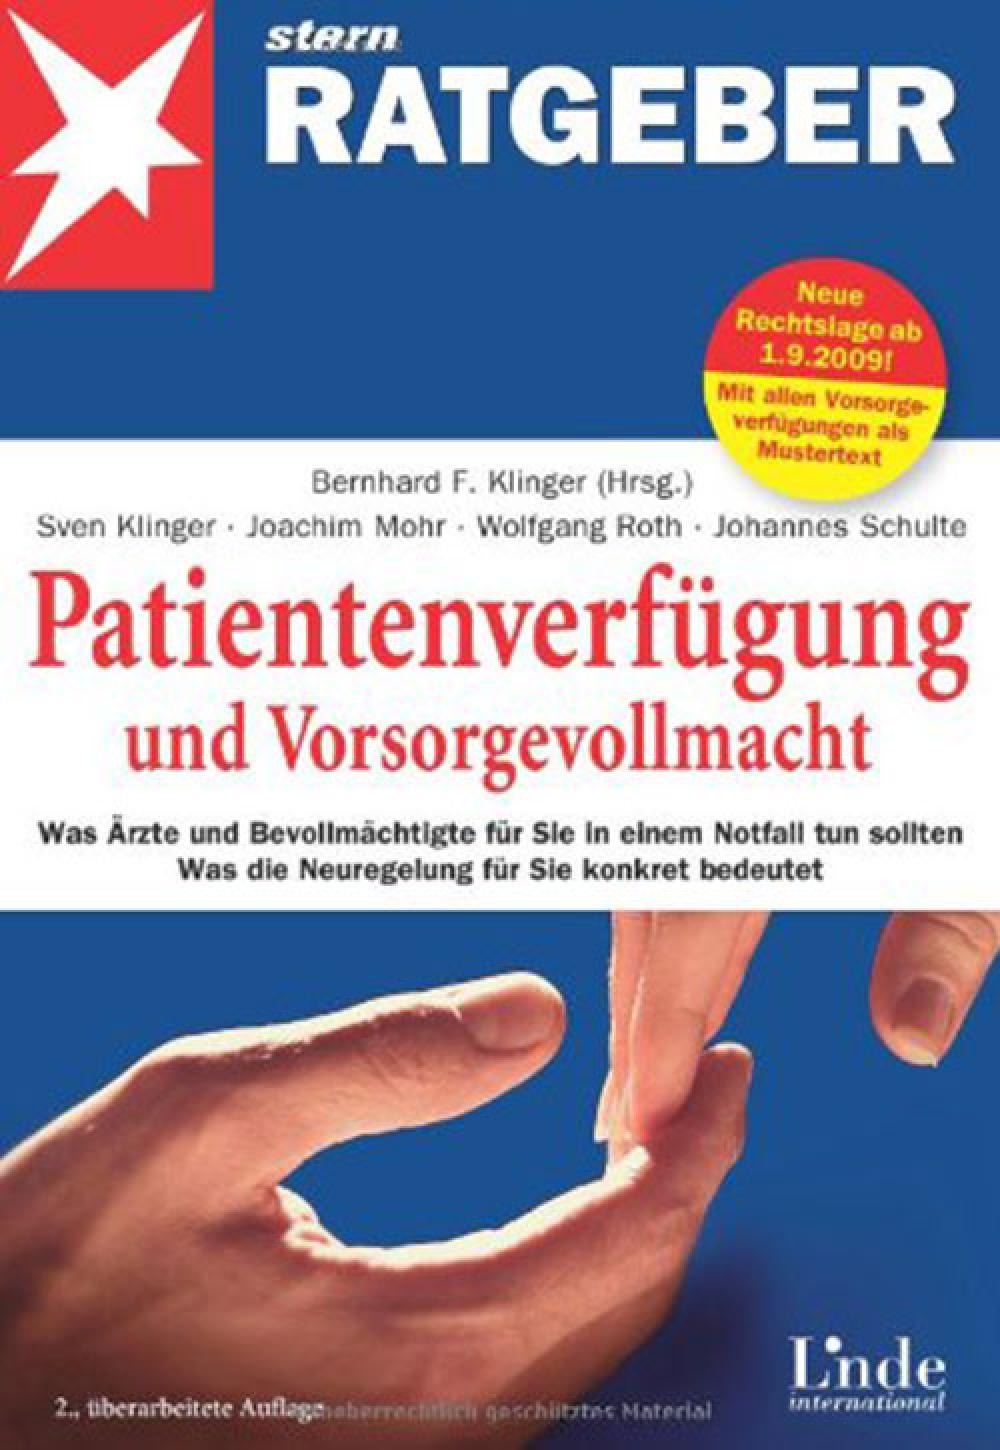 Patientenverfügung und Vorsorgevollmacht - Was Ärzte und Bevollmächtigte für Sie in einem Notfall tun sollen, 2. Auflage title=